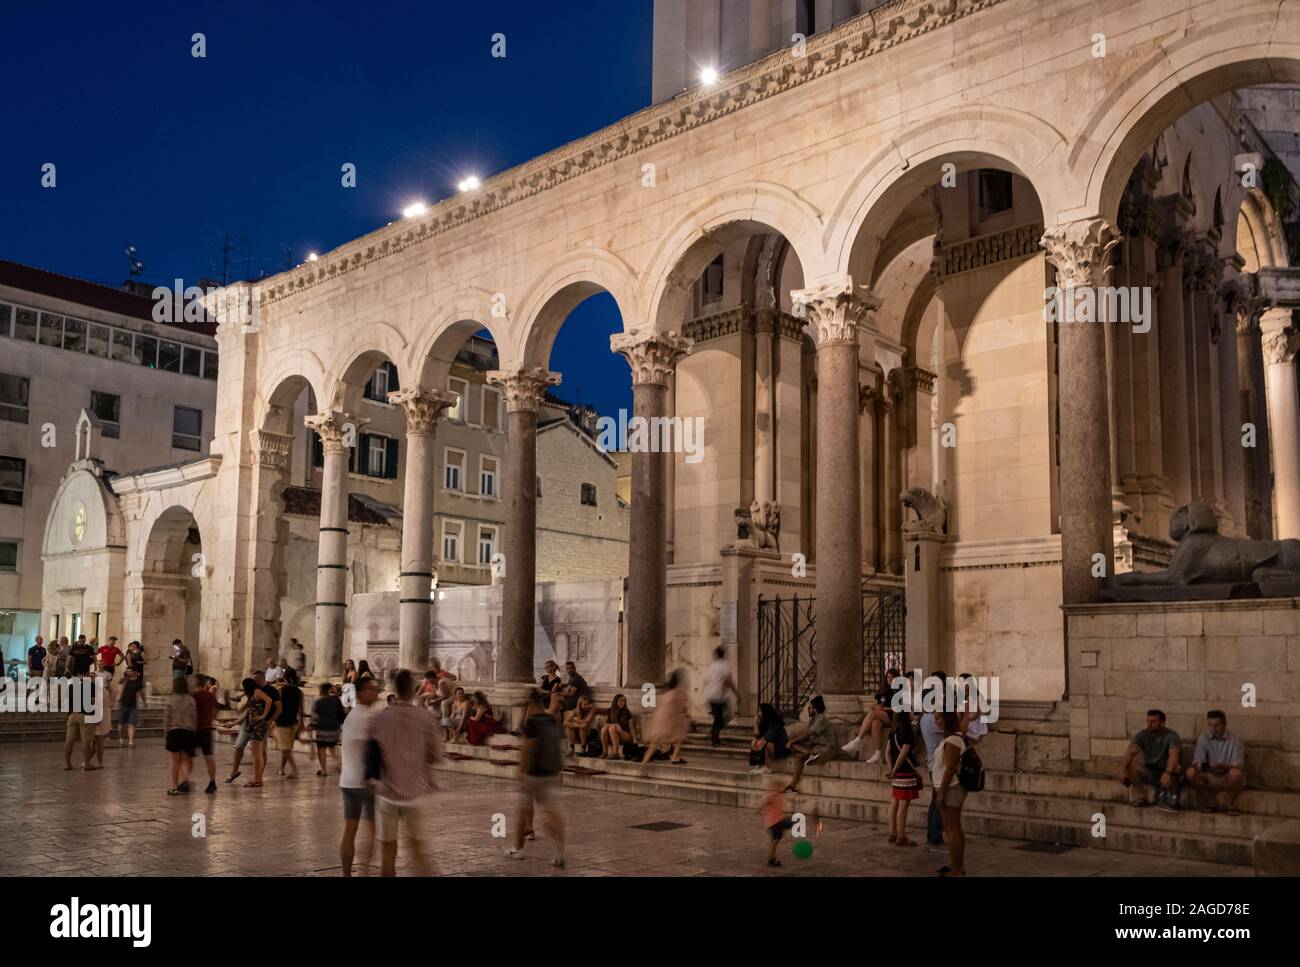 Las personas que beben y explorando la plaza dentro del Palacio de Diocleciano en la noche, Split, Croacia Foto de stock